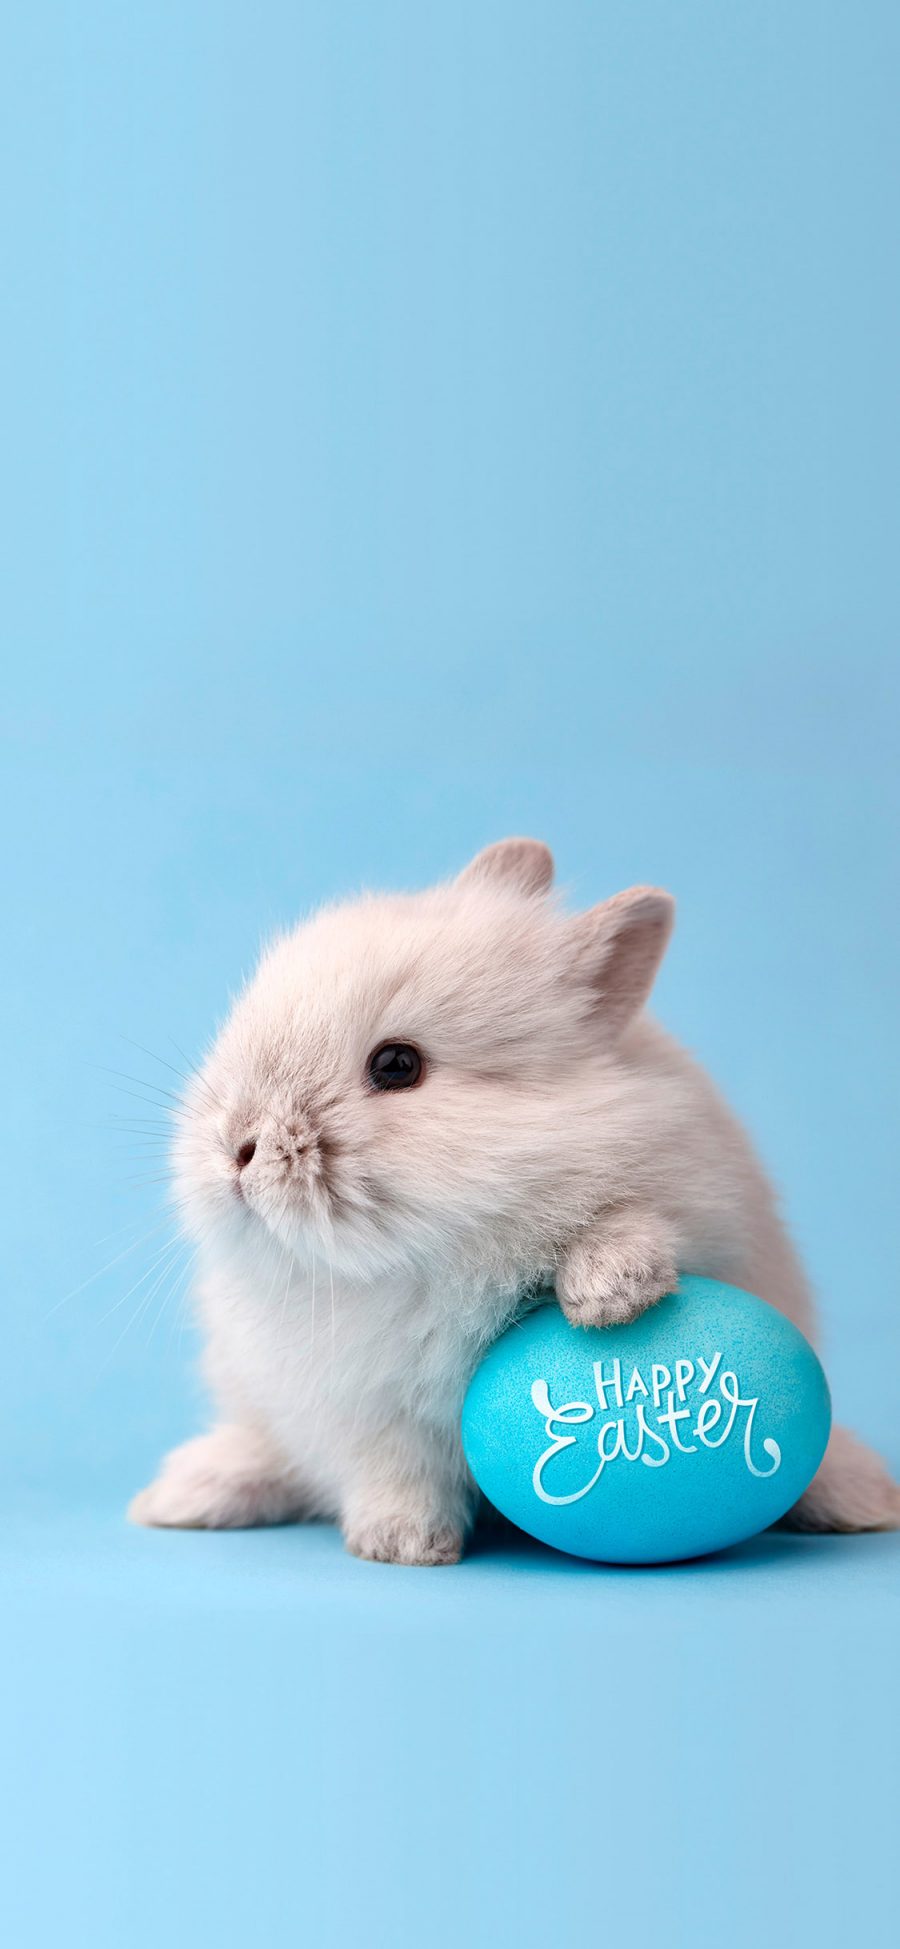 [2436×1125]兔子 萌 可爱 宠物 蓝色 苹果手机壁纸图片